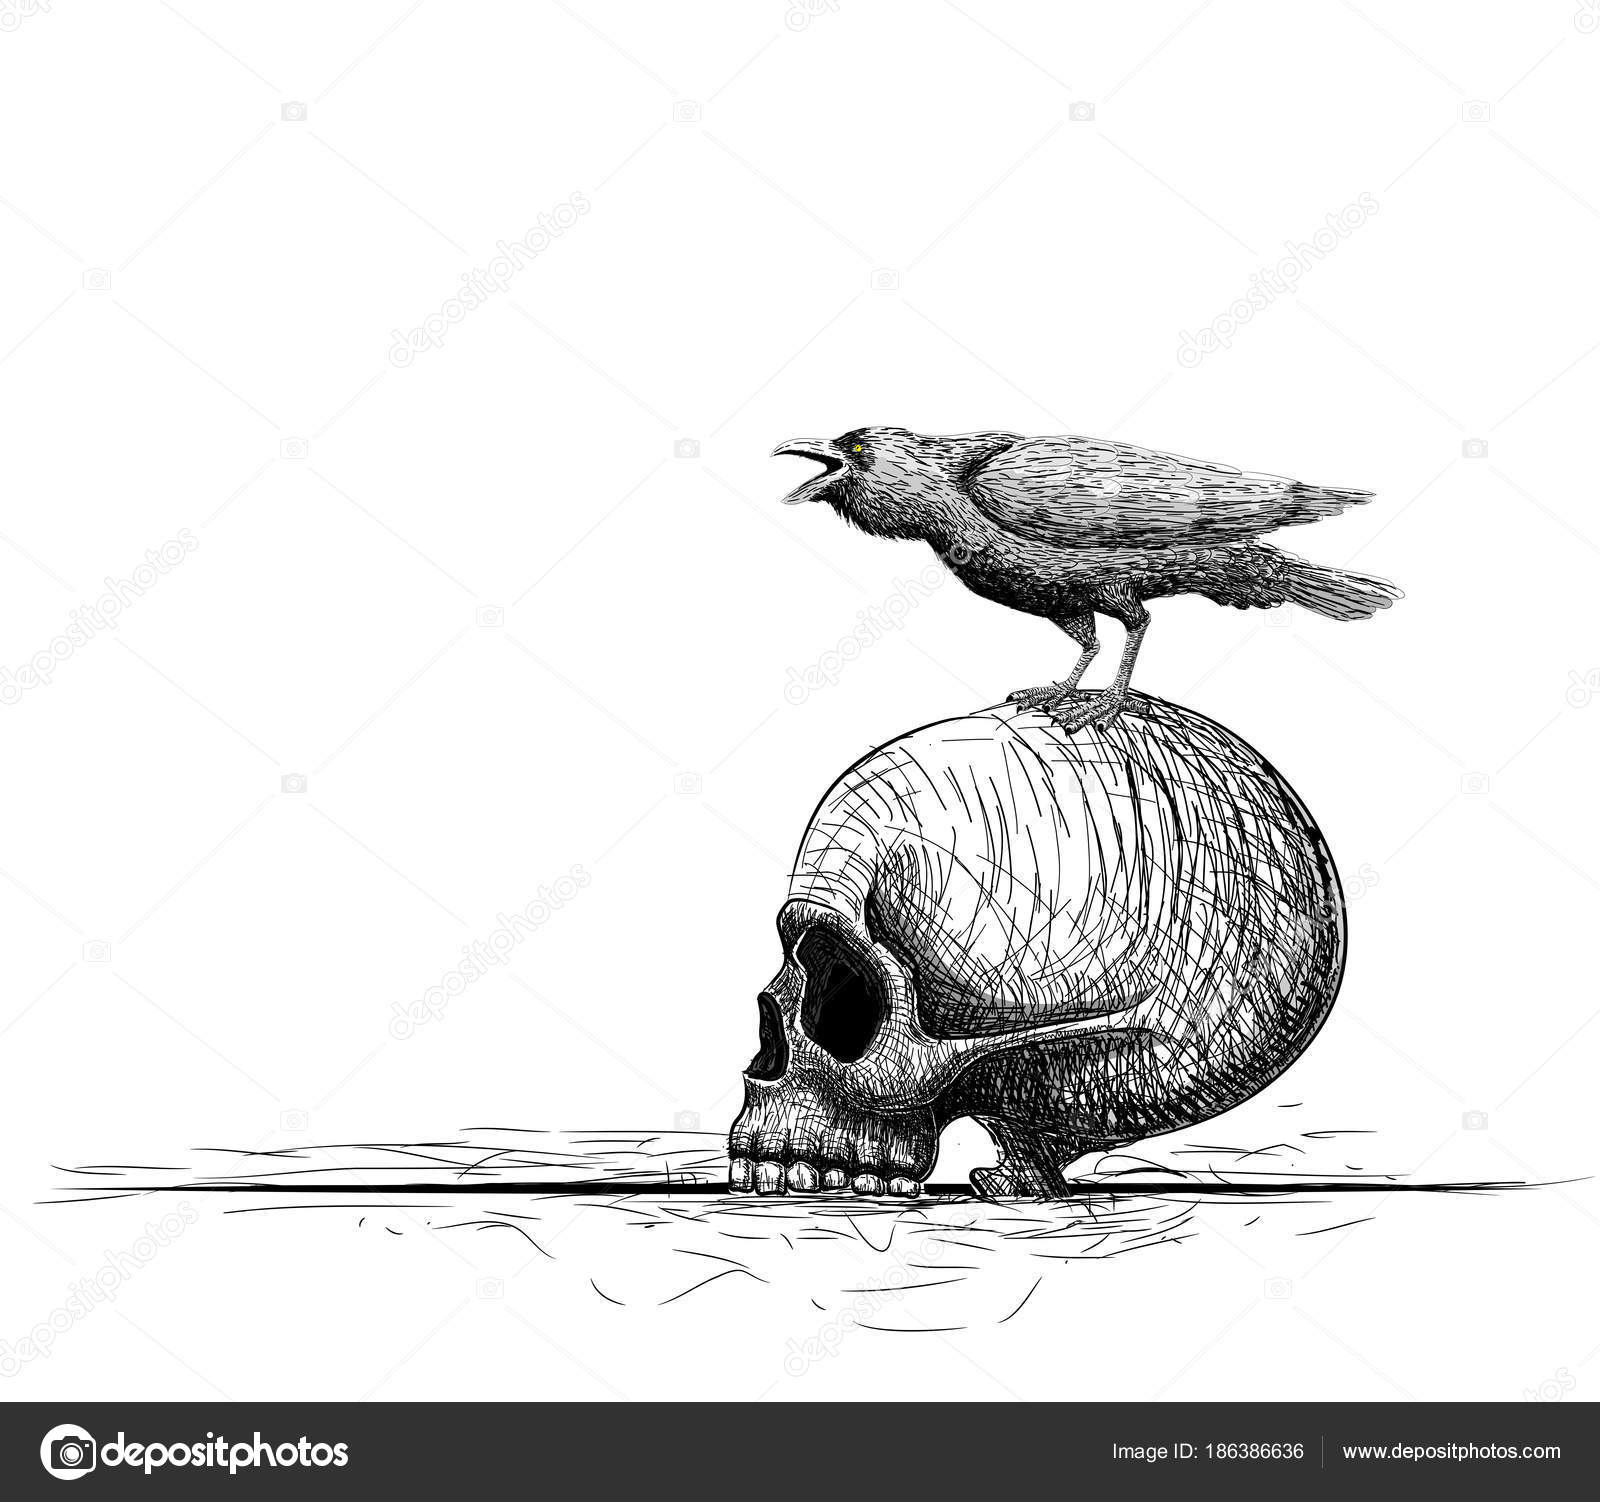 948 ilustraciones de stock de Pájaro muerto | Depositphotos